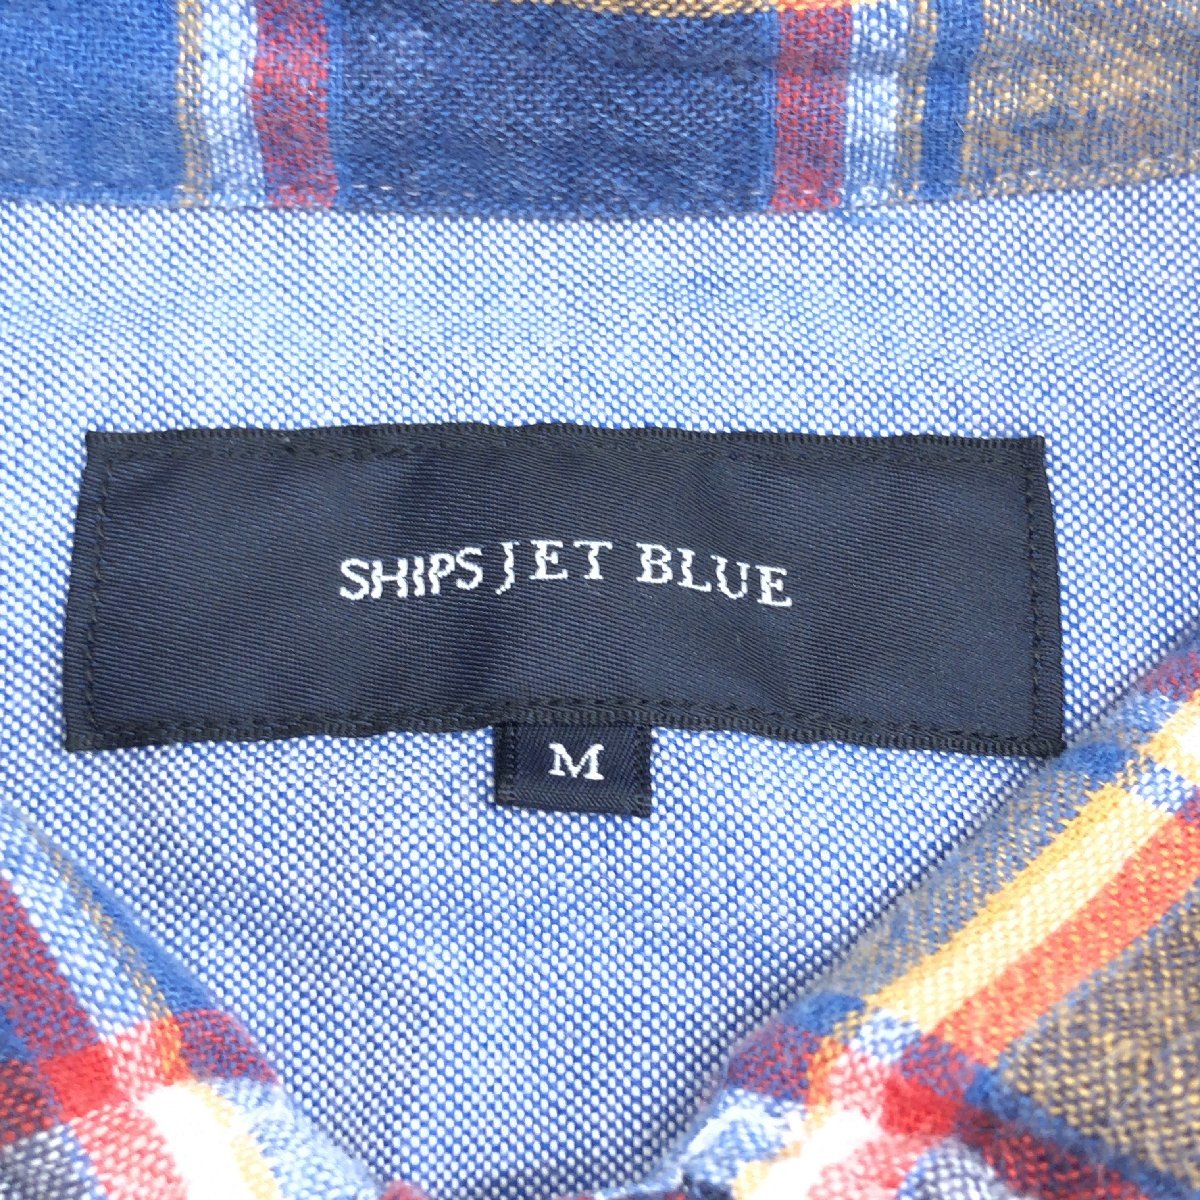 SHIPS JET BLUE Ships в клетку лен linen воротник тросик рубашка M многоцветный длинный рукав 7 минут рукав сделано в Японии внутренний стандартный товар мужской джентльмен 